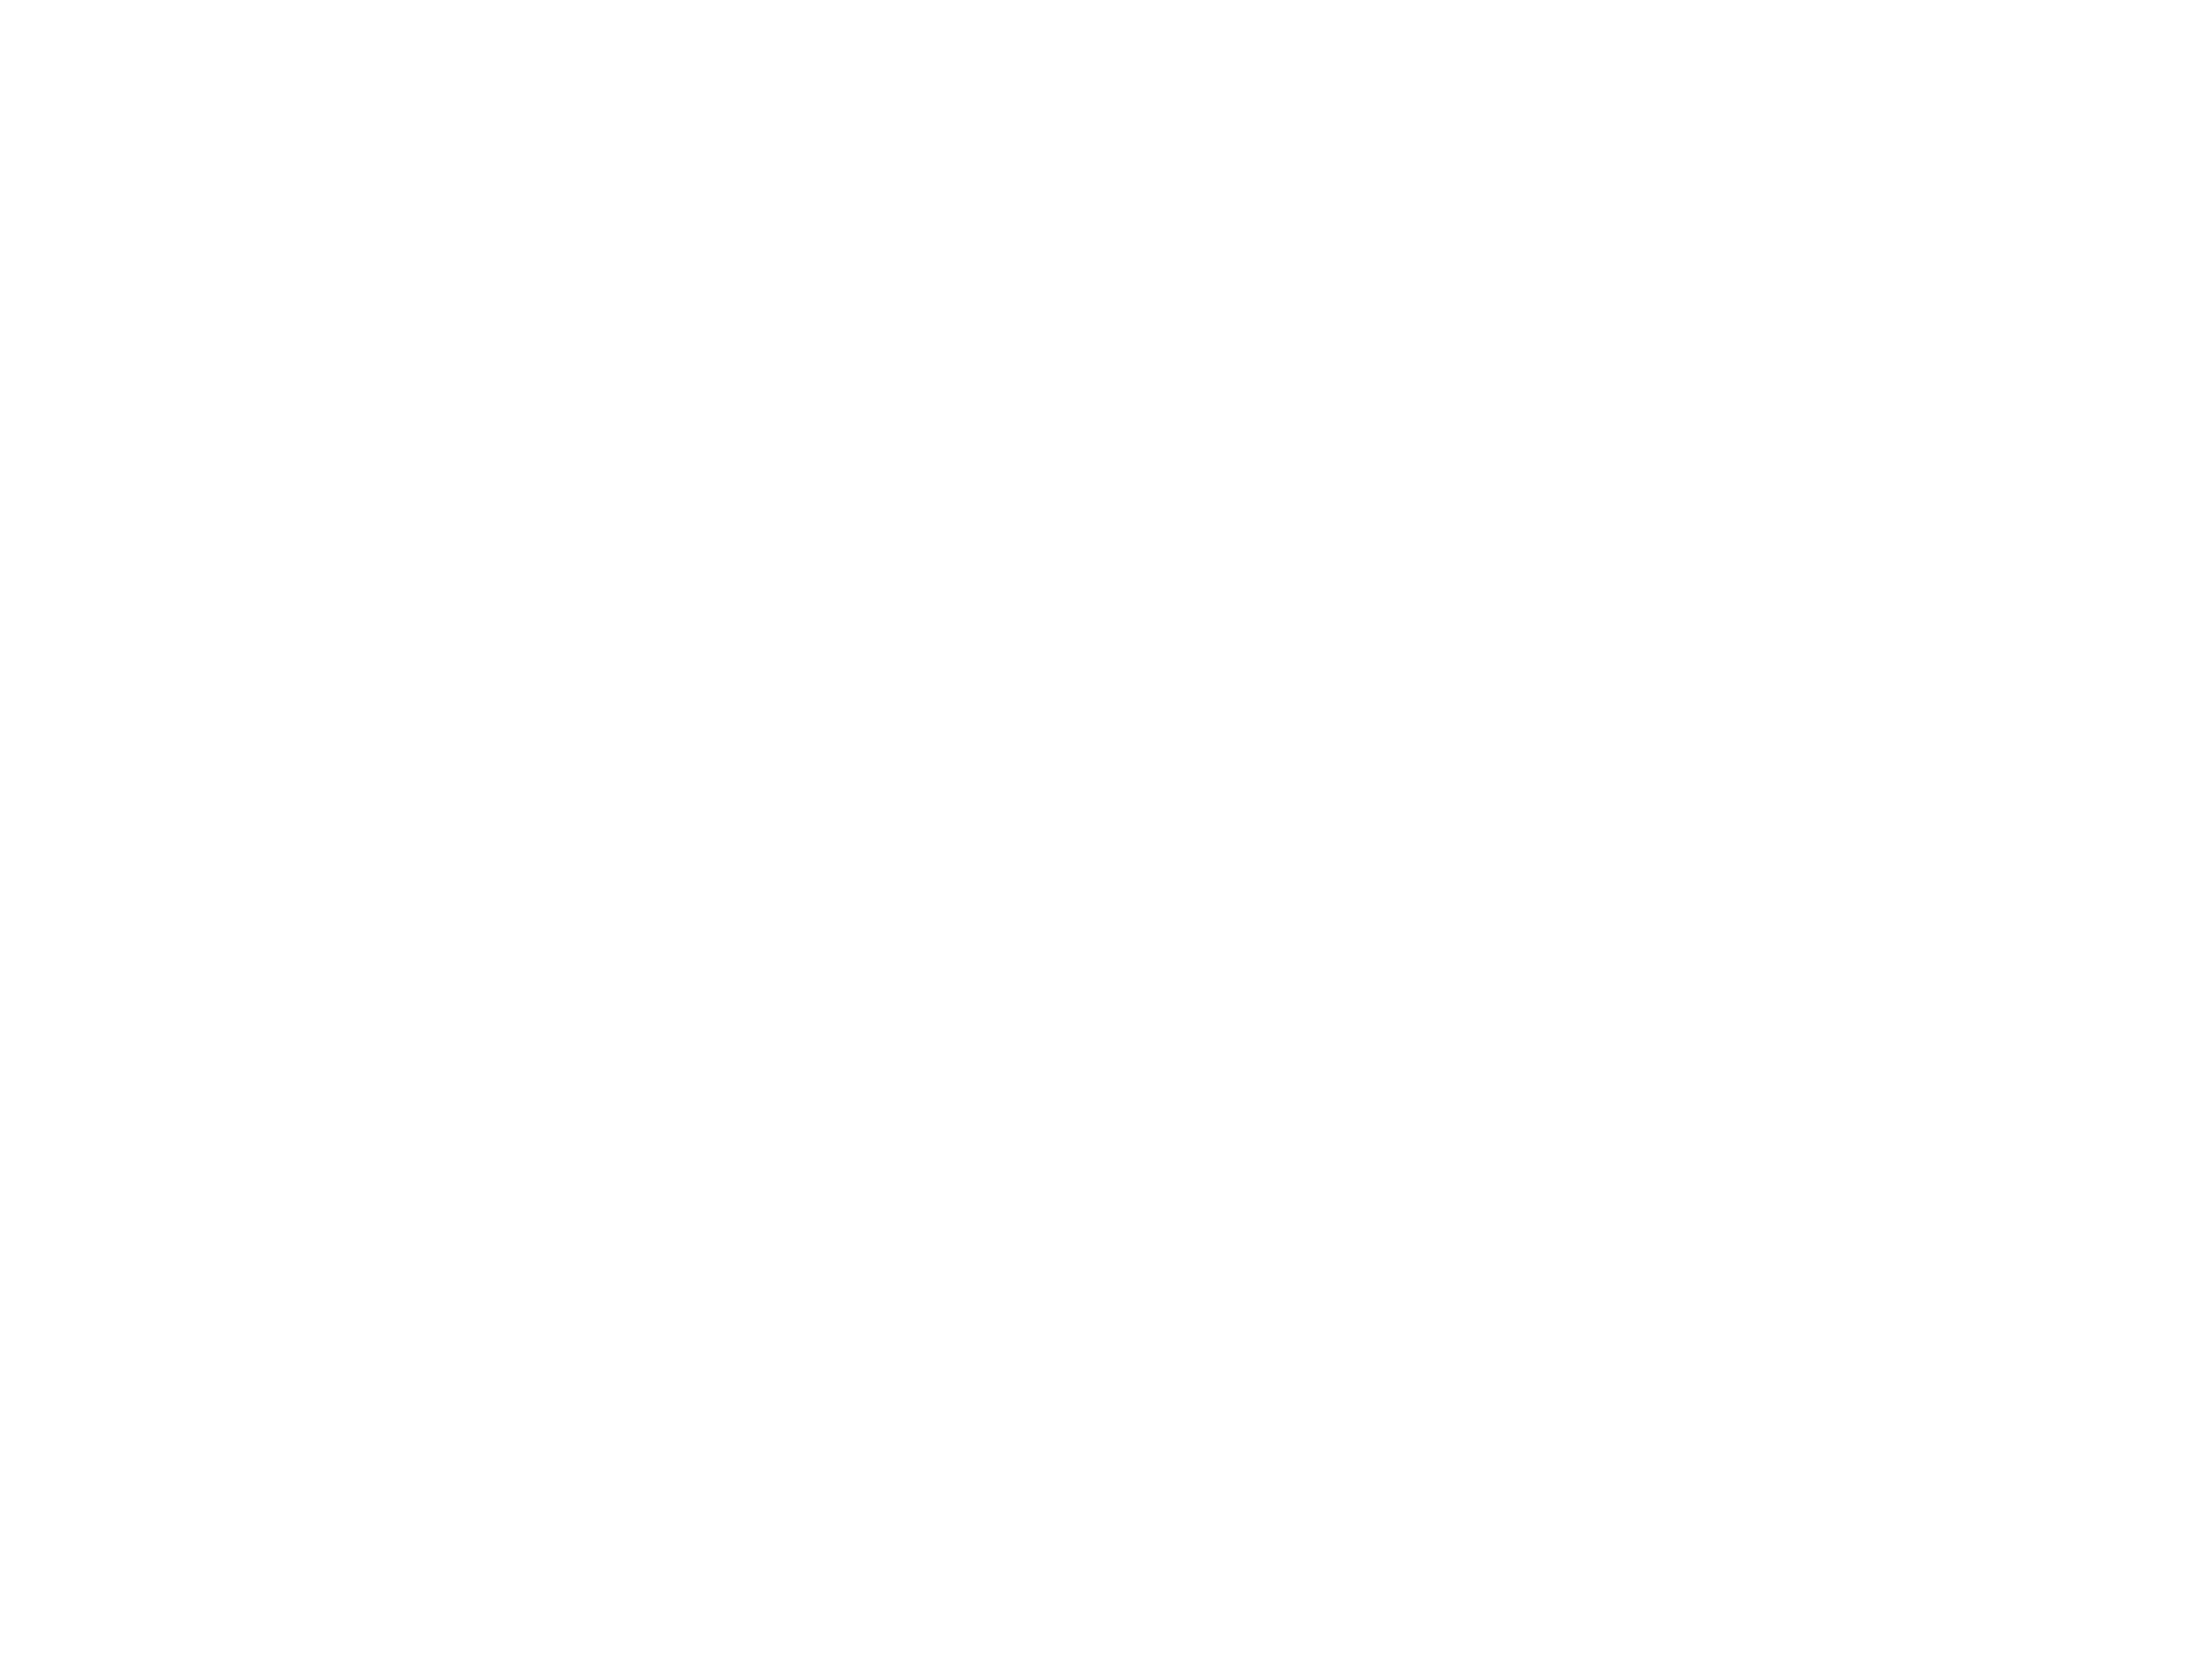 IAEA Logo - Mission and Vision. UCI Nuclear Reactor Facility